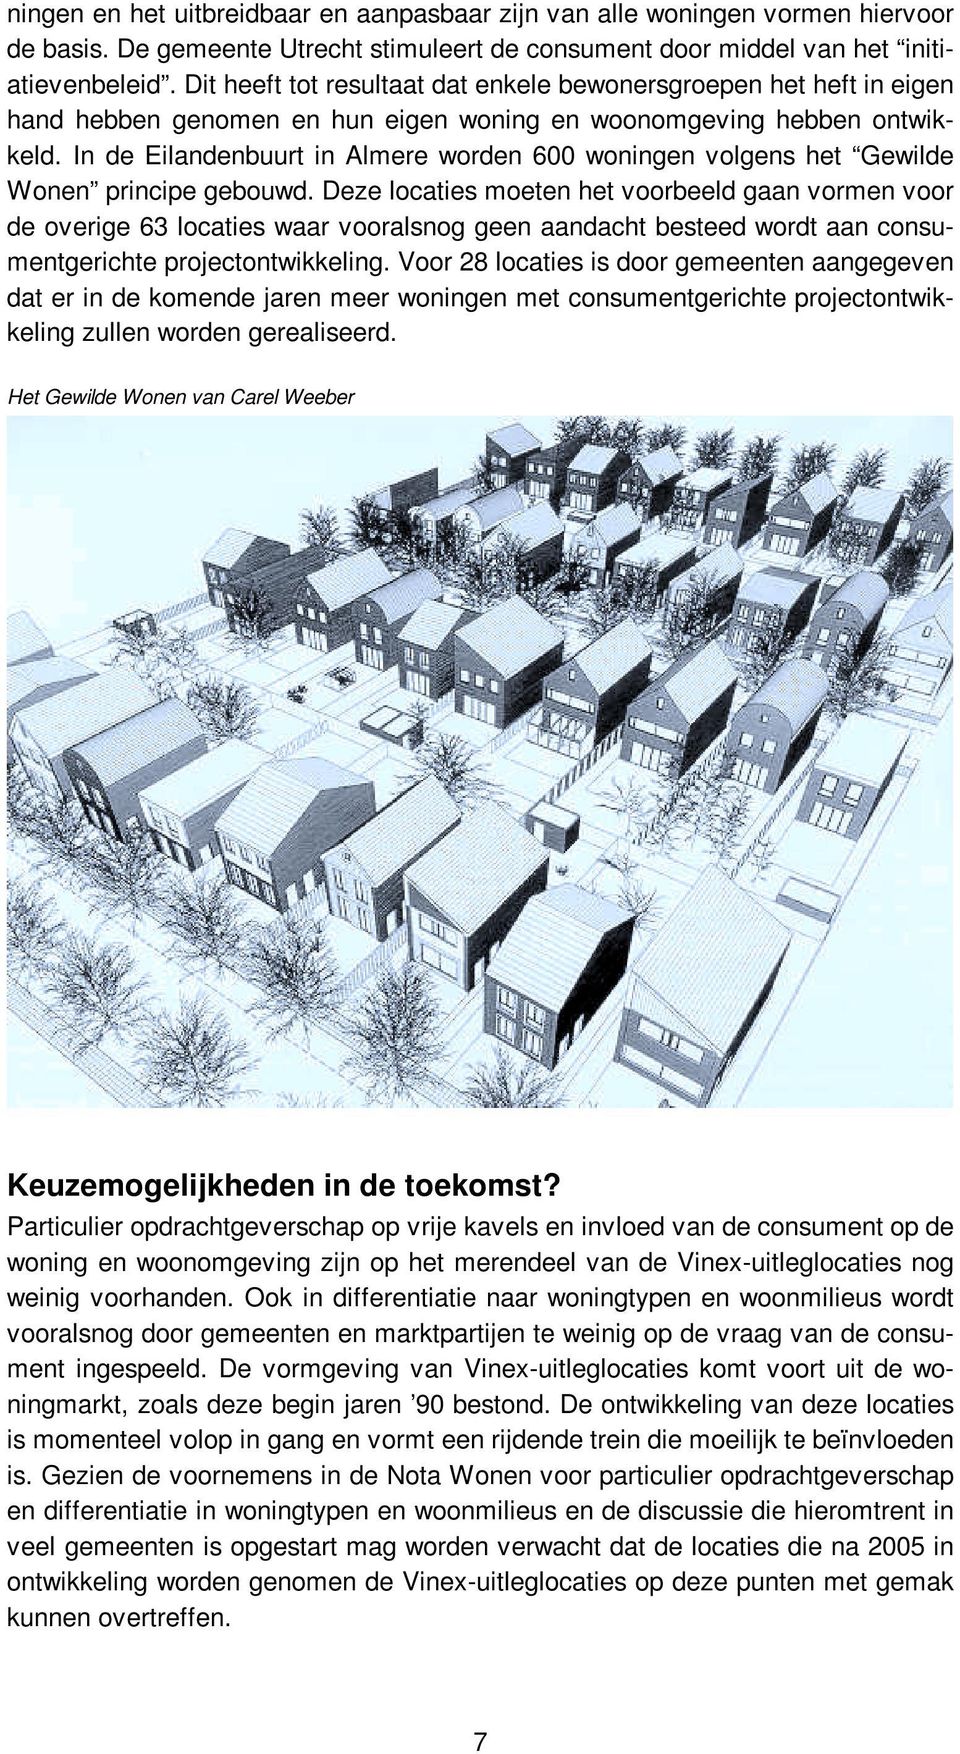 In de Eilandenbuurt in Almere worden 600 woningen volgens het Gewilde Wonen principe gebouwd.